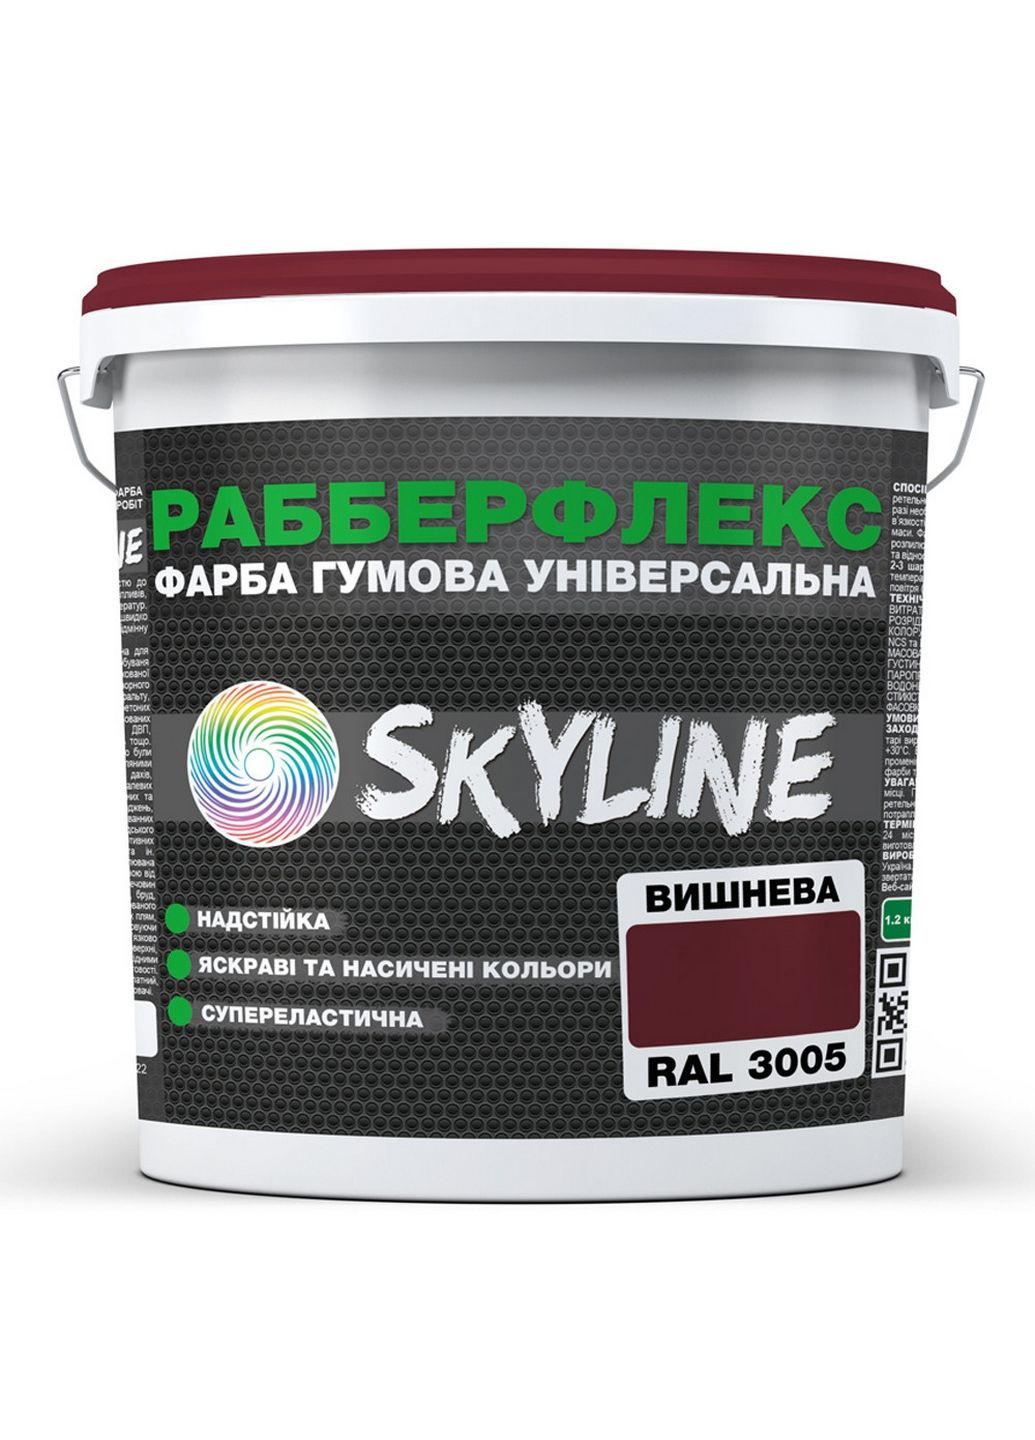 Надстійка фарба гумова супереластична «РабберФлекс» 3,6 кг SkyLine (289363759)